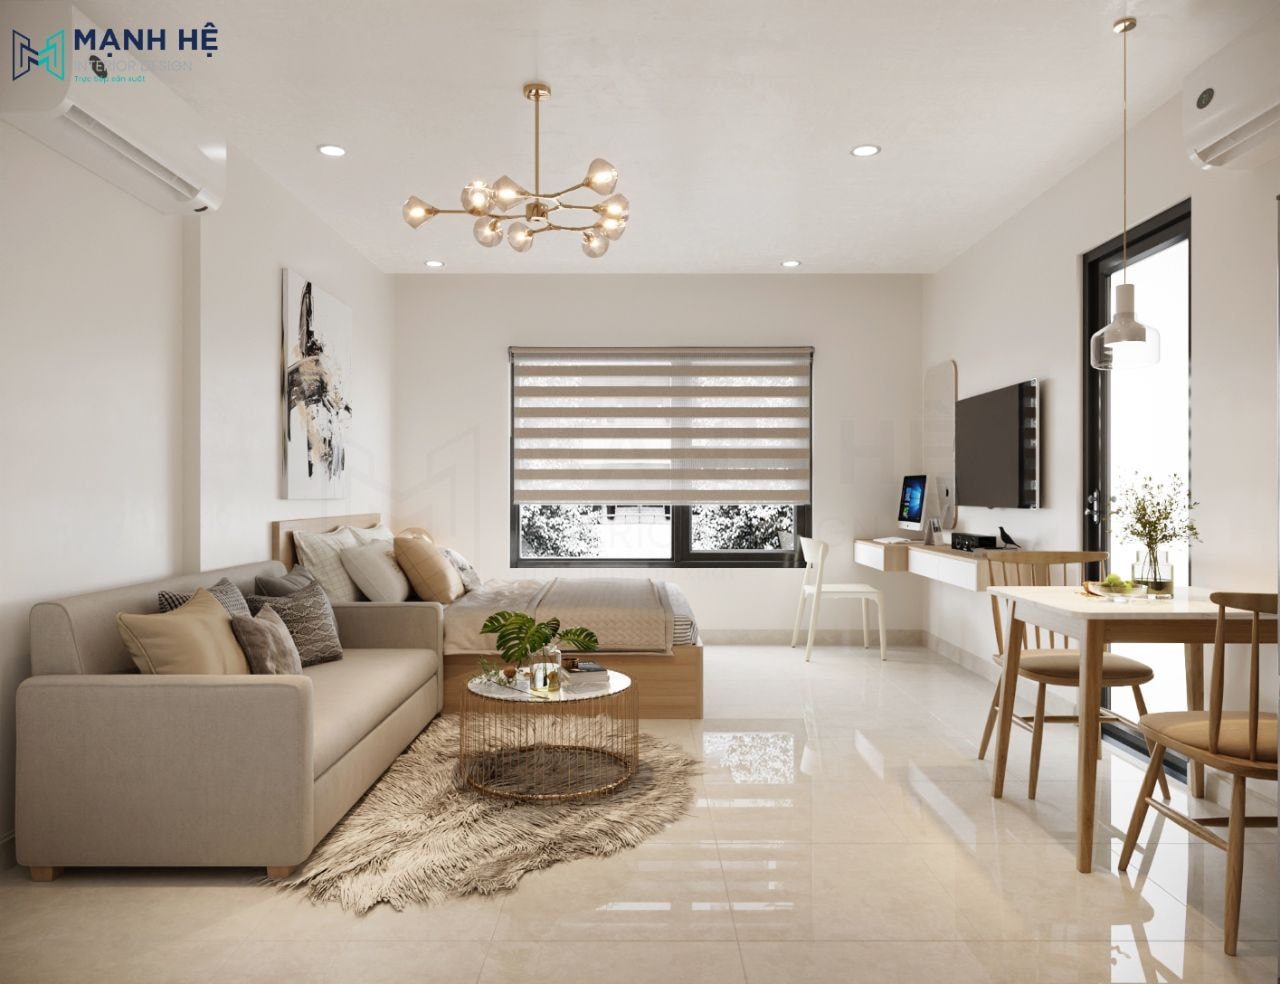 7 Mẫu thiết kế nội thất căn hộ dịch vụ đẹp, tiện nghi với mức giá hợp lý